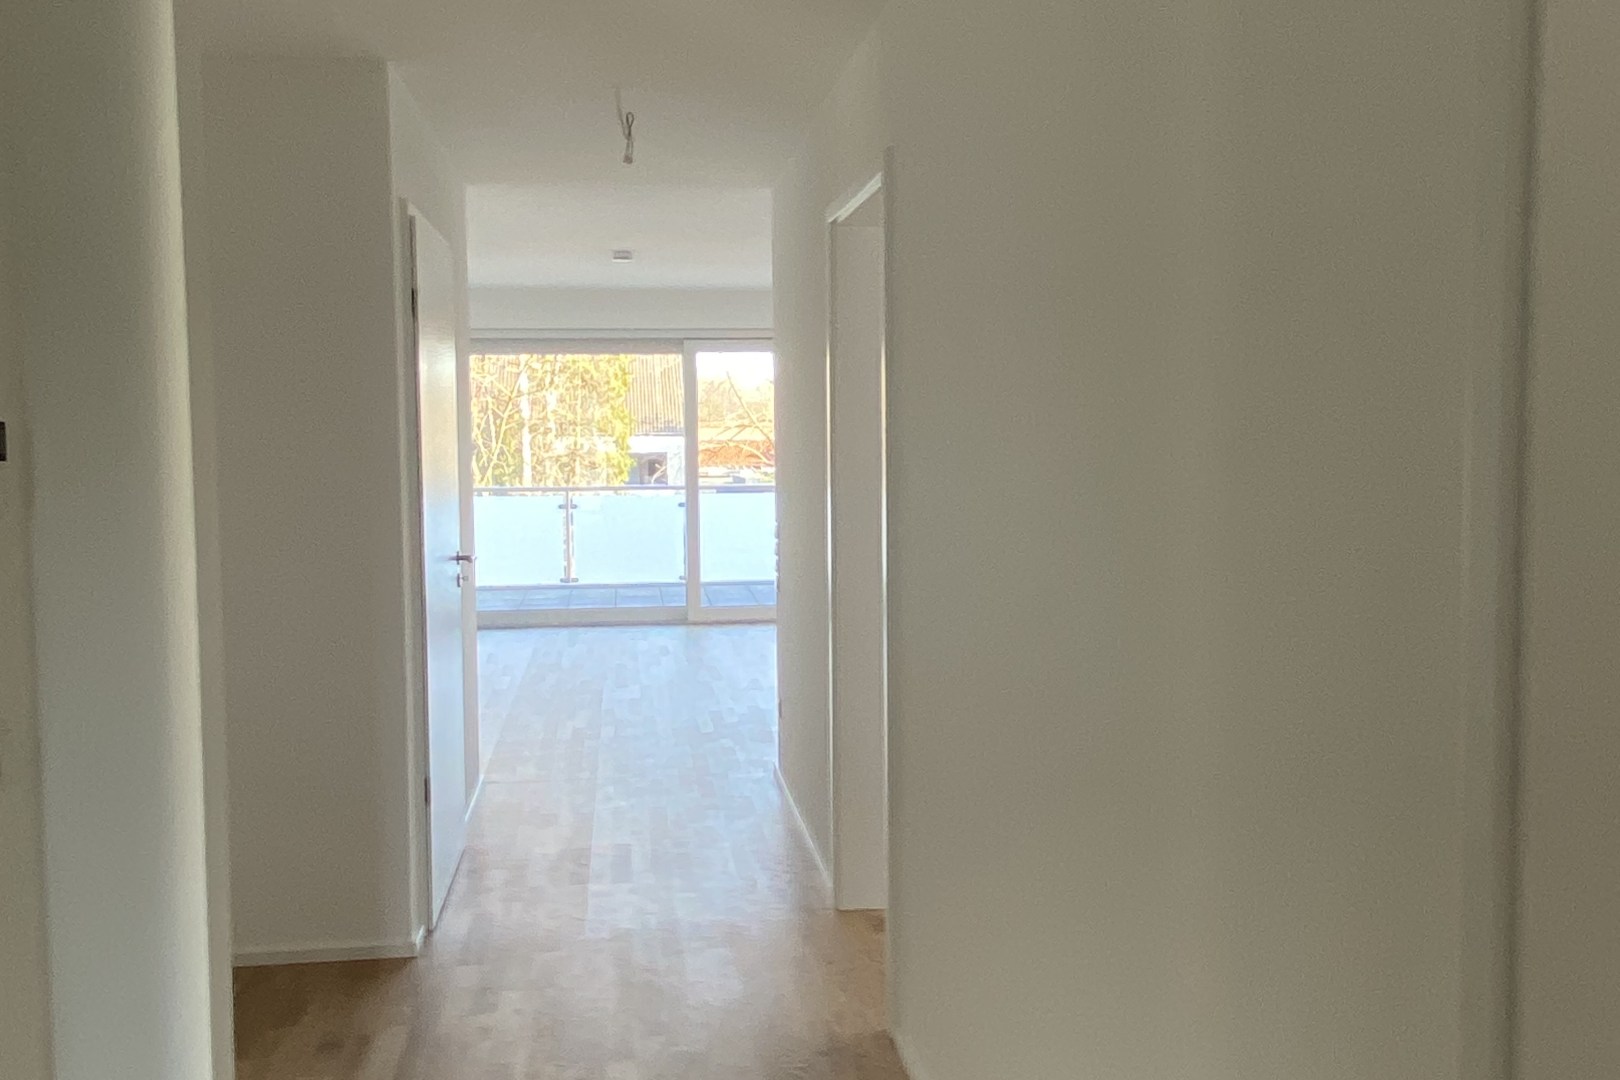 Immobilie Nr.0366 - 3-Raum-Wohnung mit EBK, Balkon, Garage u. Stellplatz - Bild 9.jpg